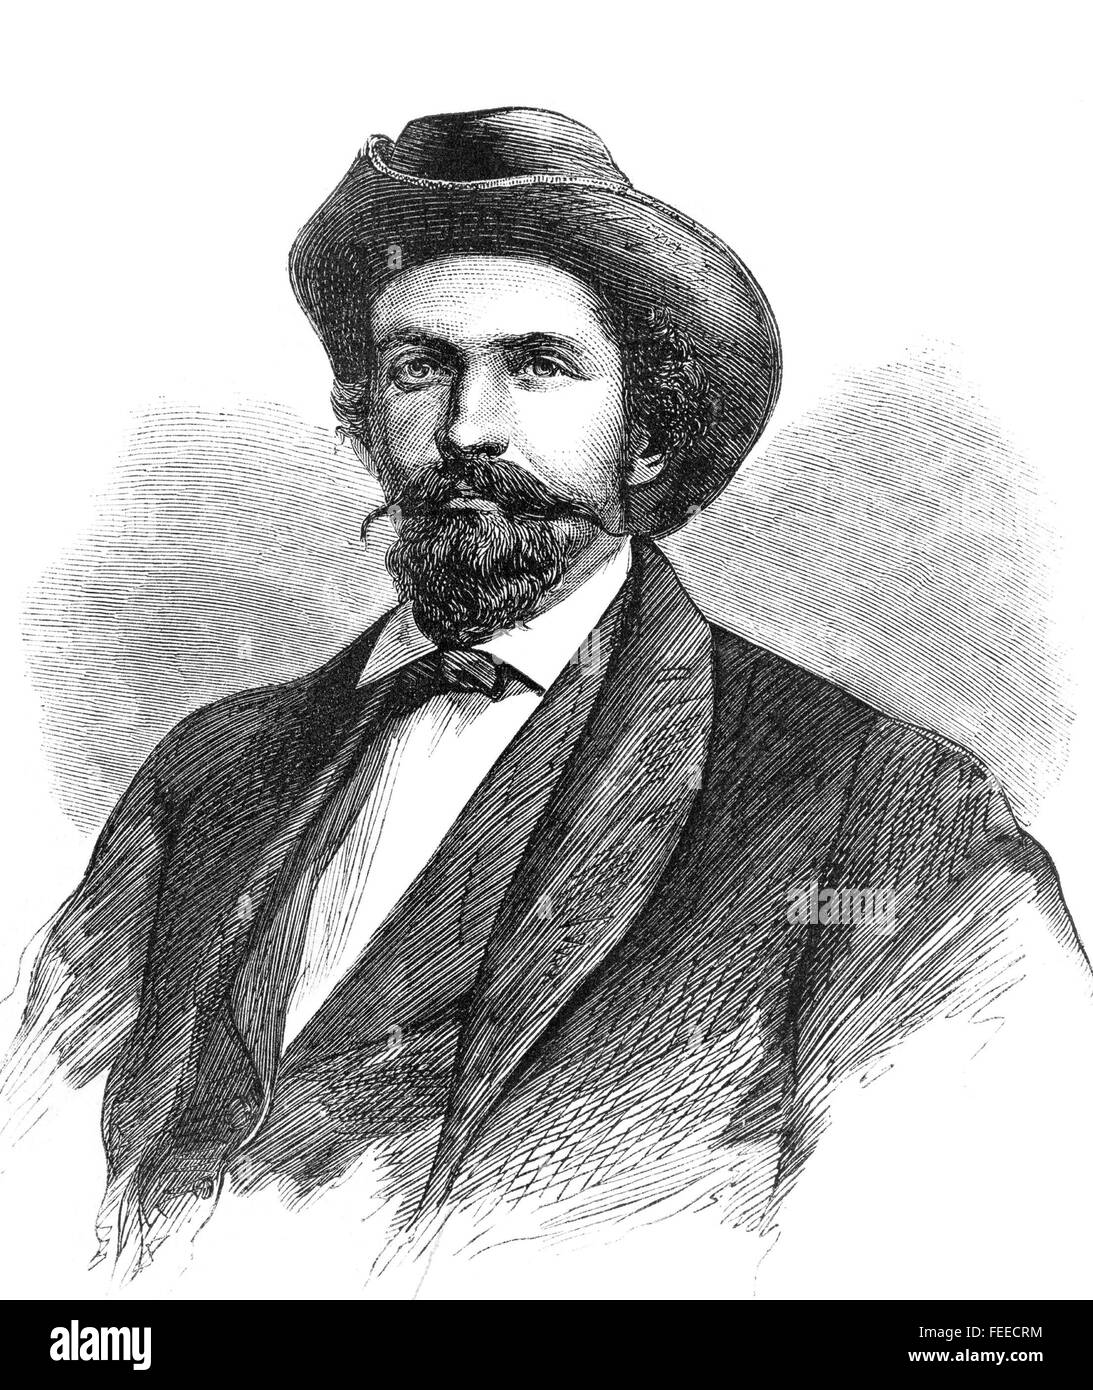 JOHN HUNT MORGAN (1825-1864) verbündete Armee-General im amerikanischen Bürgerkrieg Stockfoto